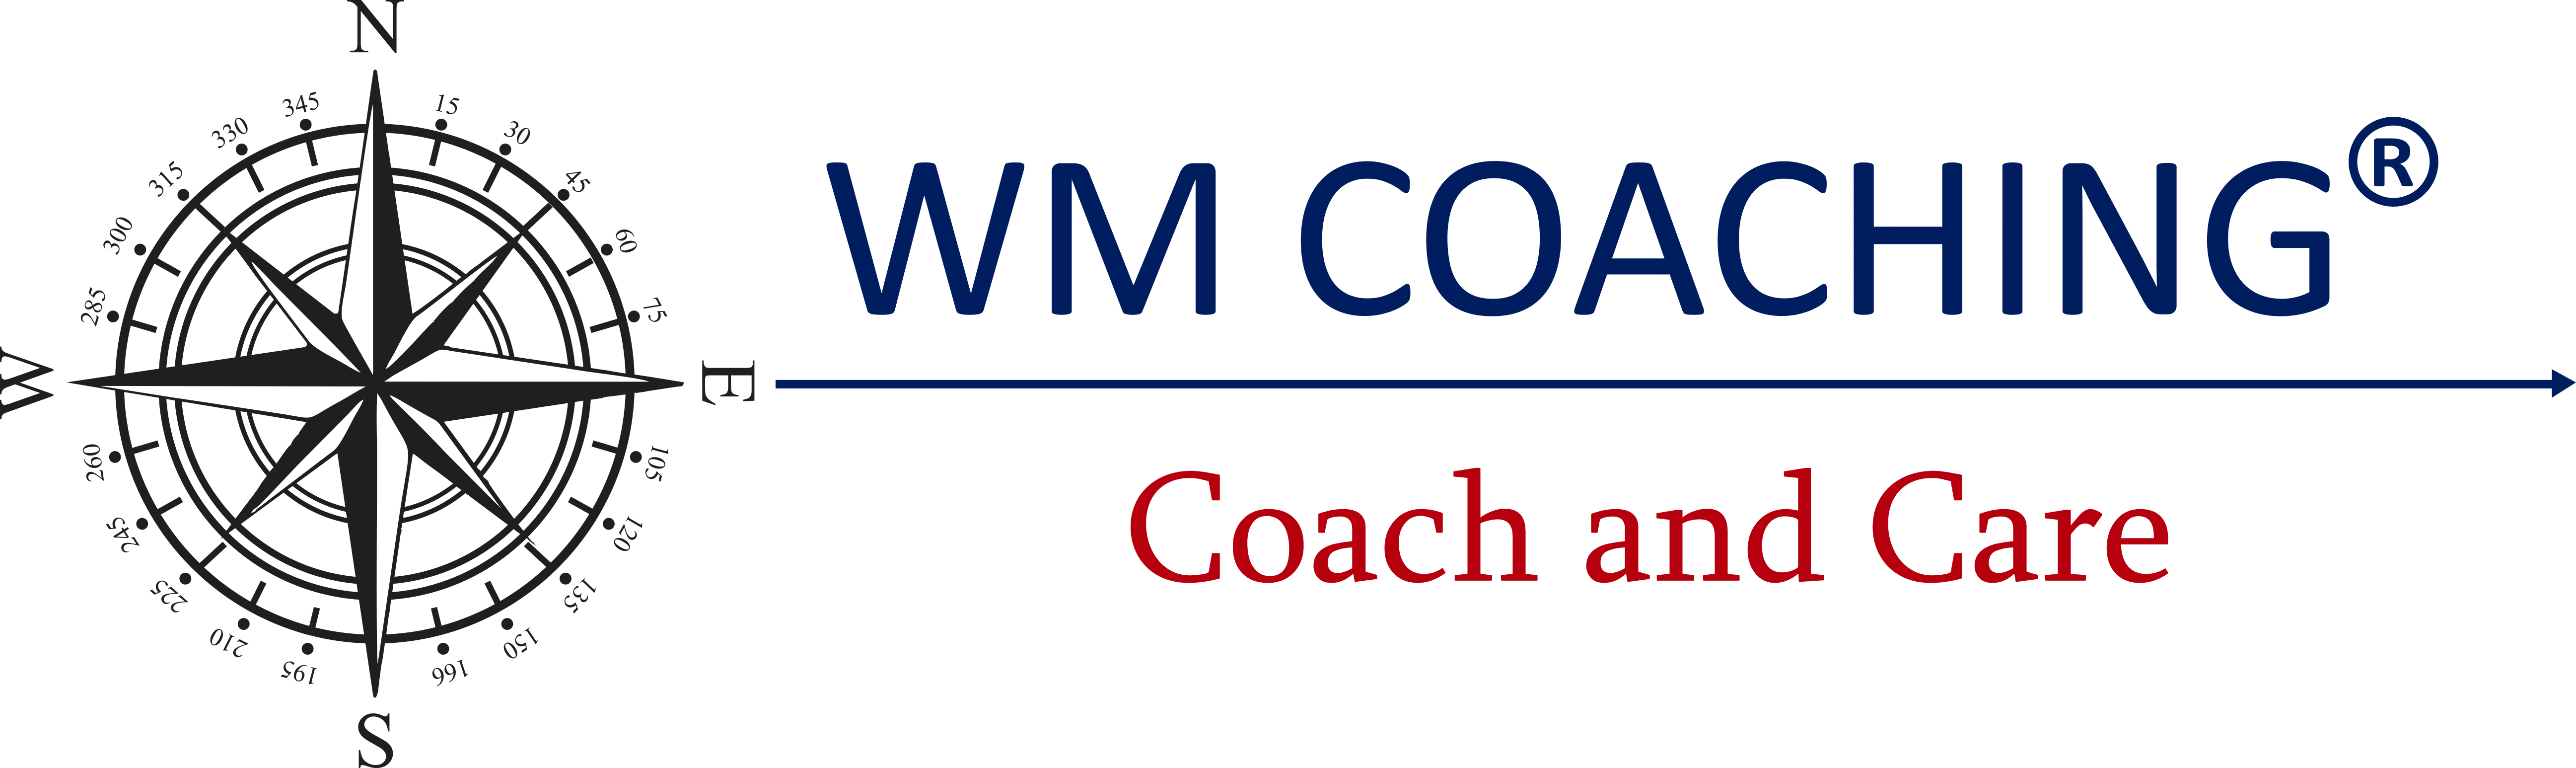 WM Coaching Coach and Care